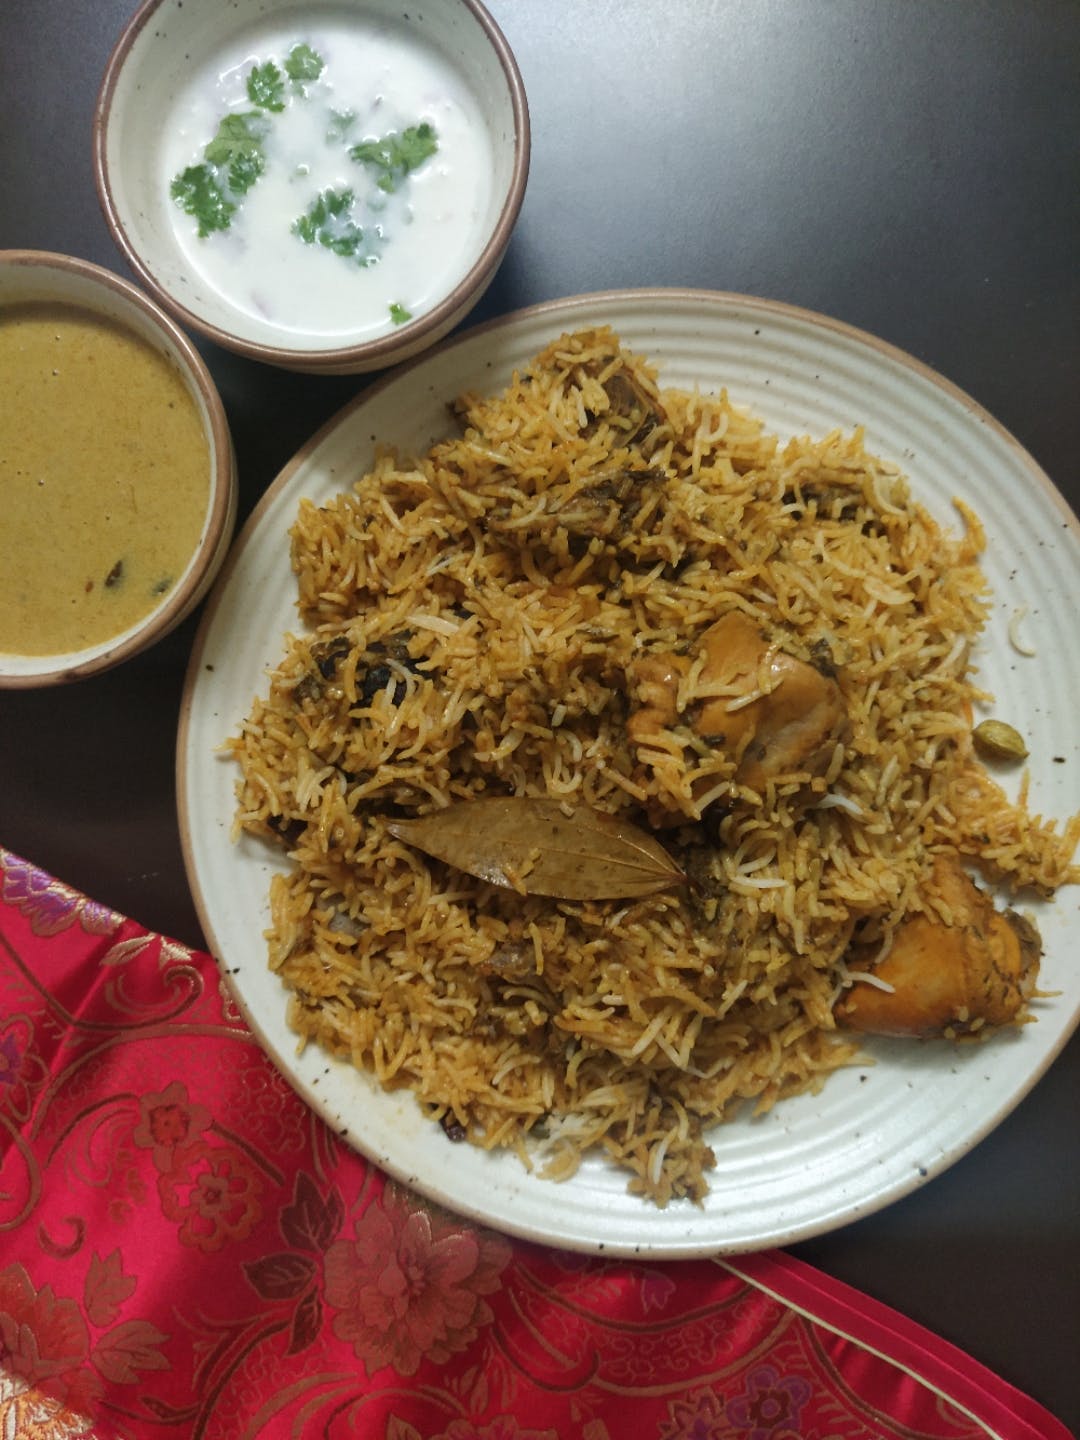 Make Biryani In 3 Easy Steps With Nandu's Chicken Biryani Kits!